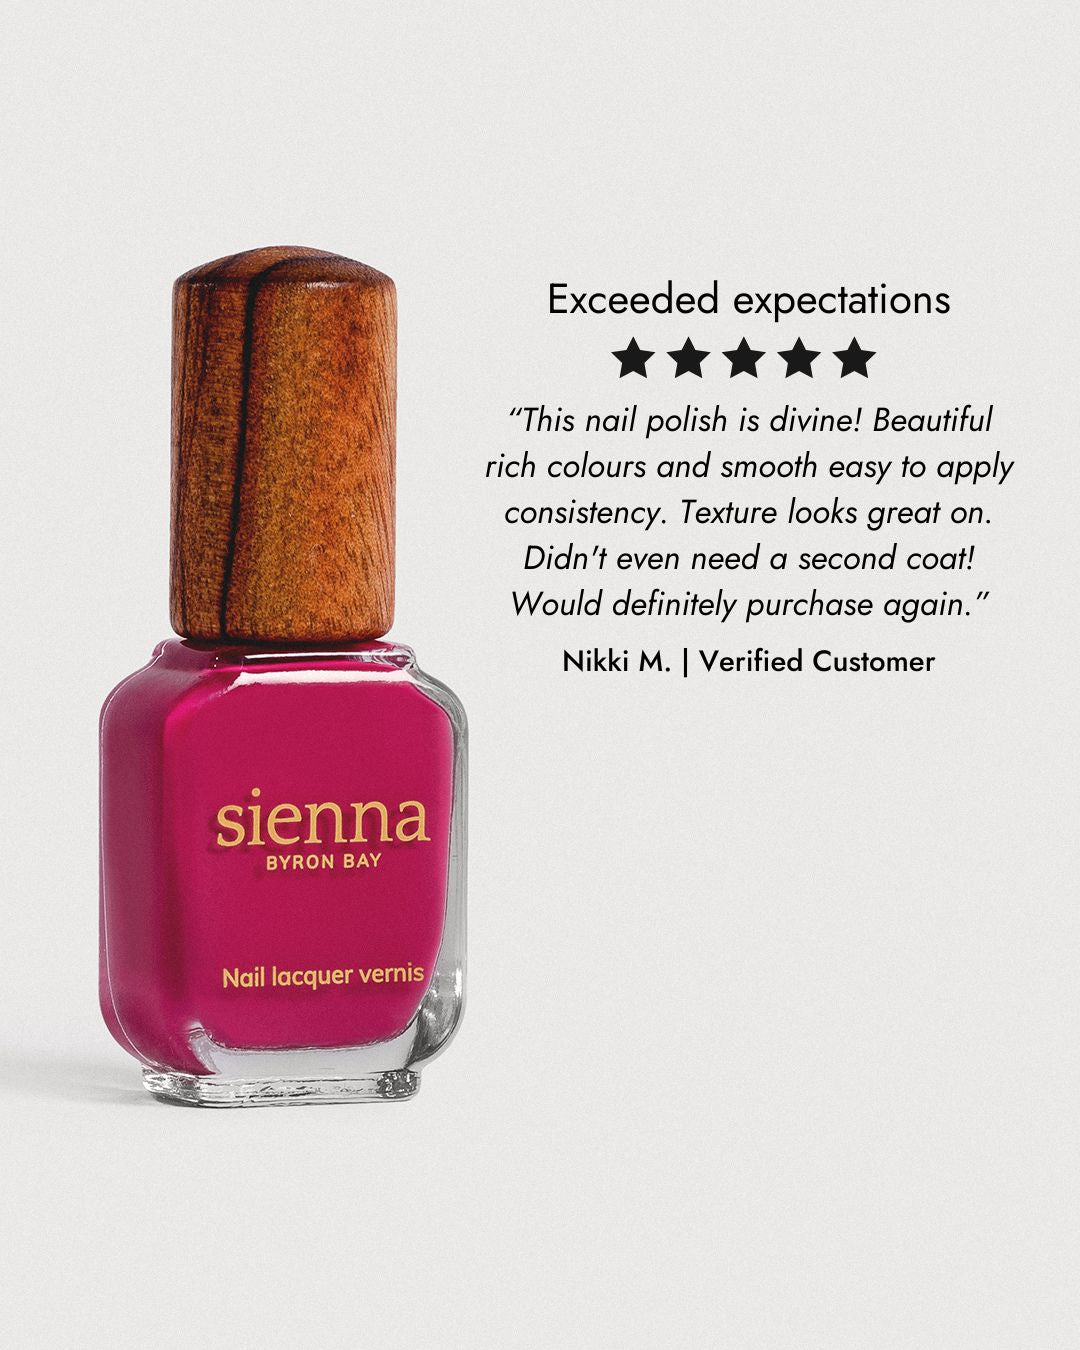 fushia pink nail polish bottle 5 star review